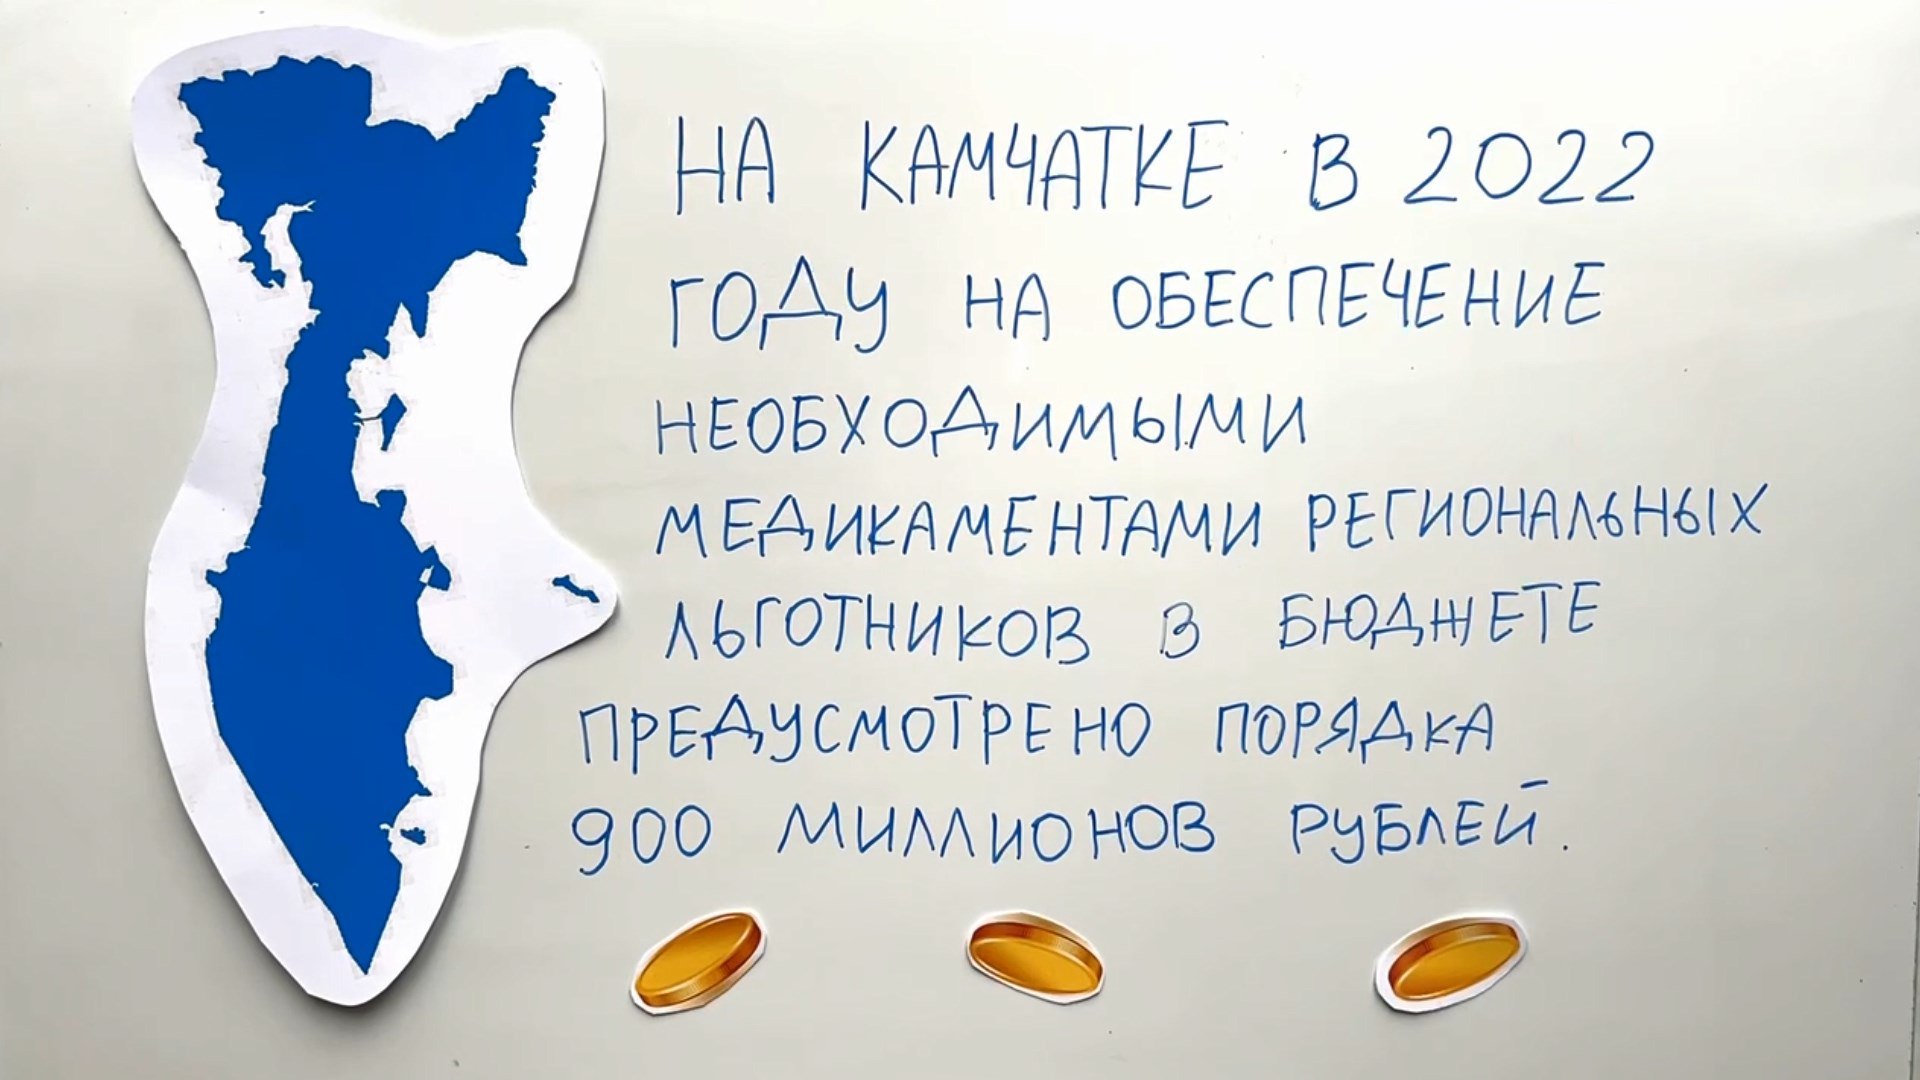 Восьмой выпуск мультфильма «Бюджет простыми словами» вышел в эфир  камчатских телеканалов